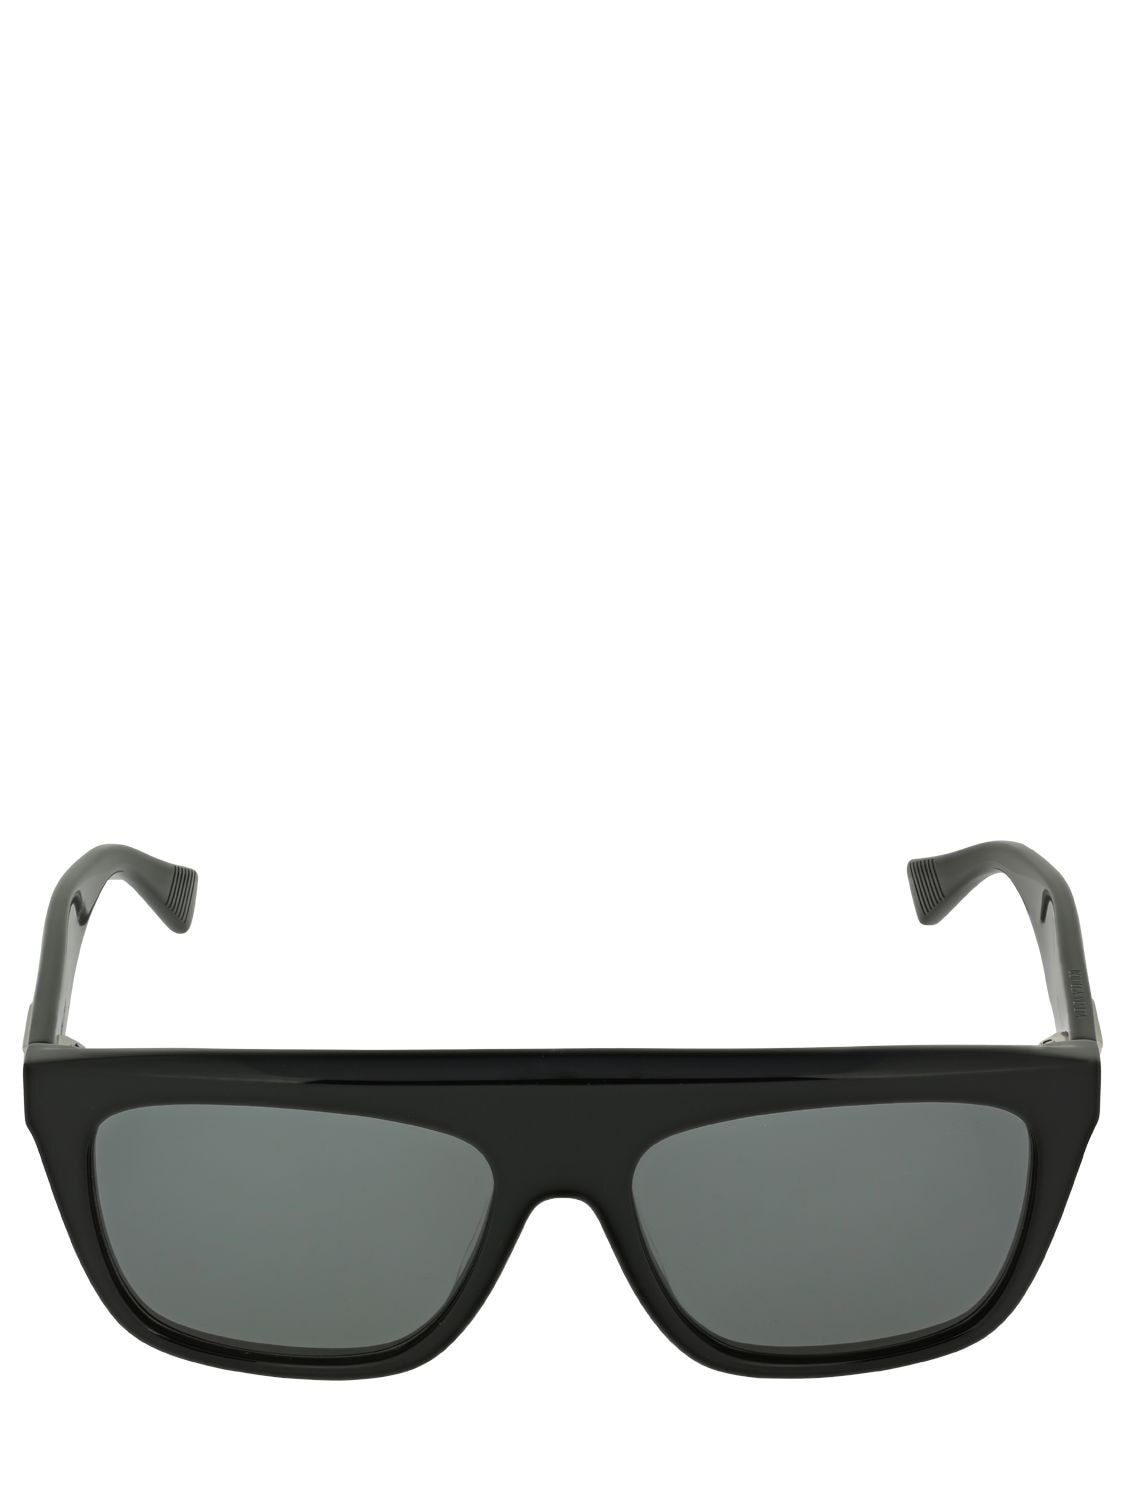 Bv1060s Squared Acetate Sunglasses